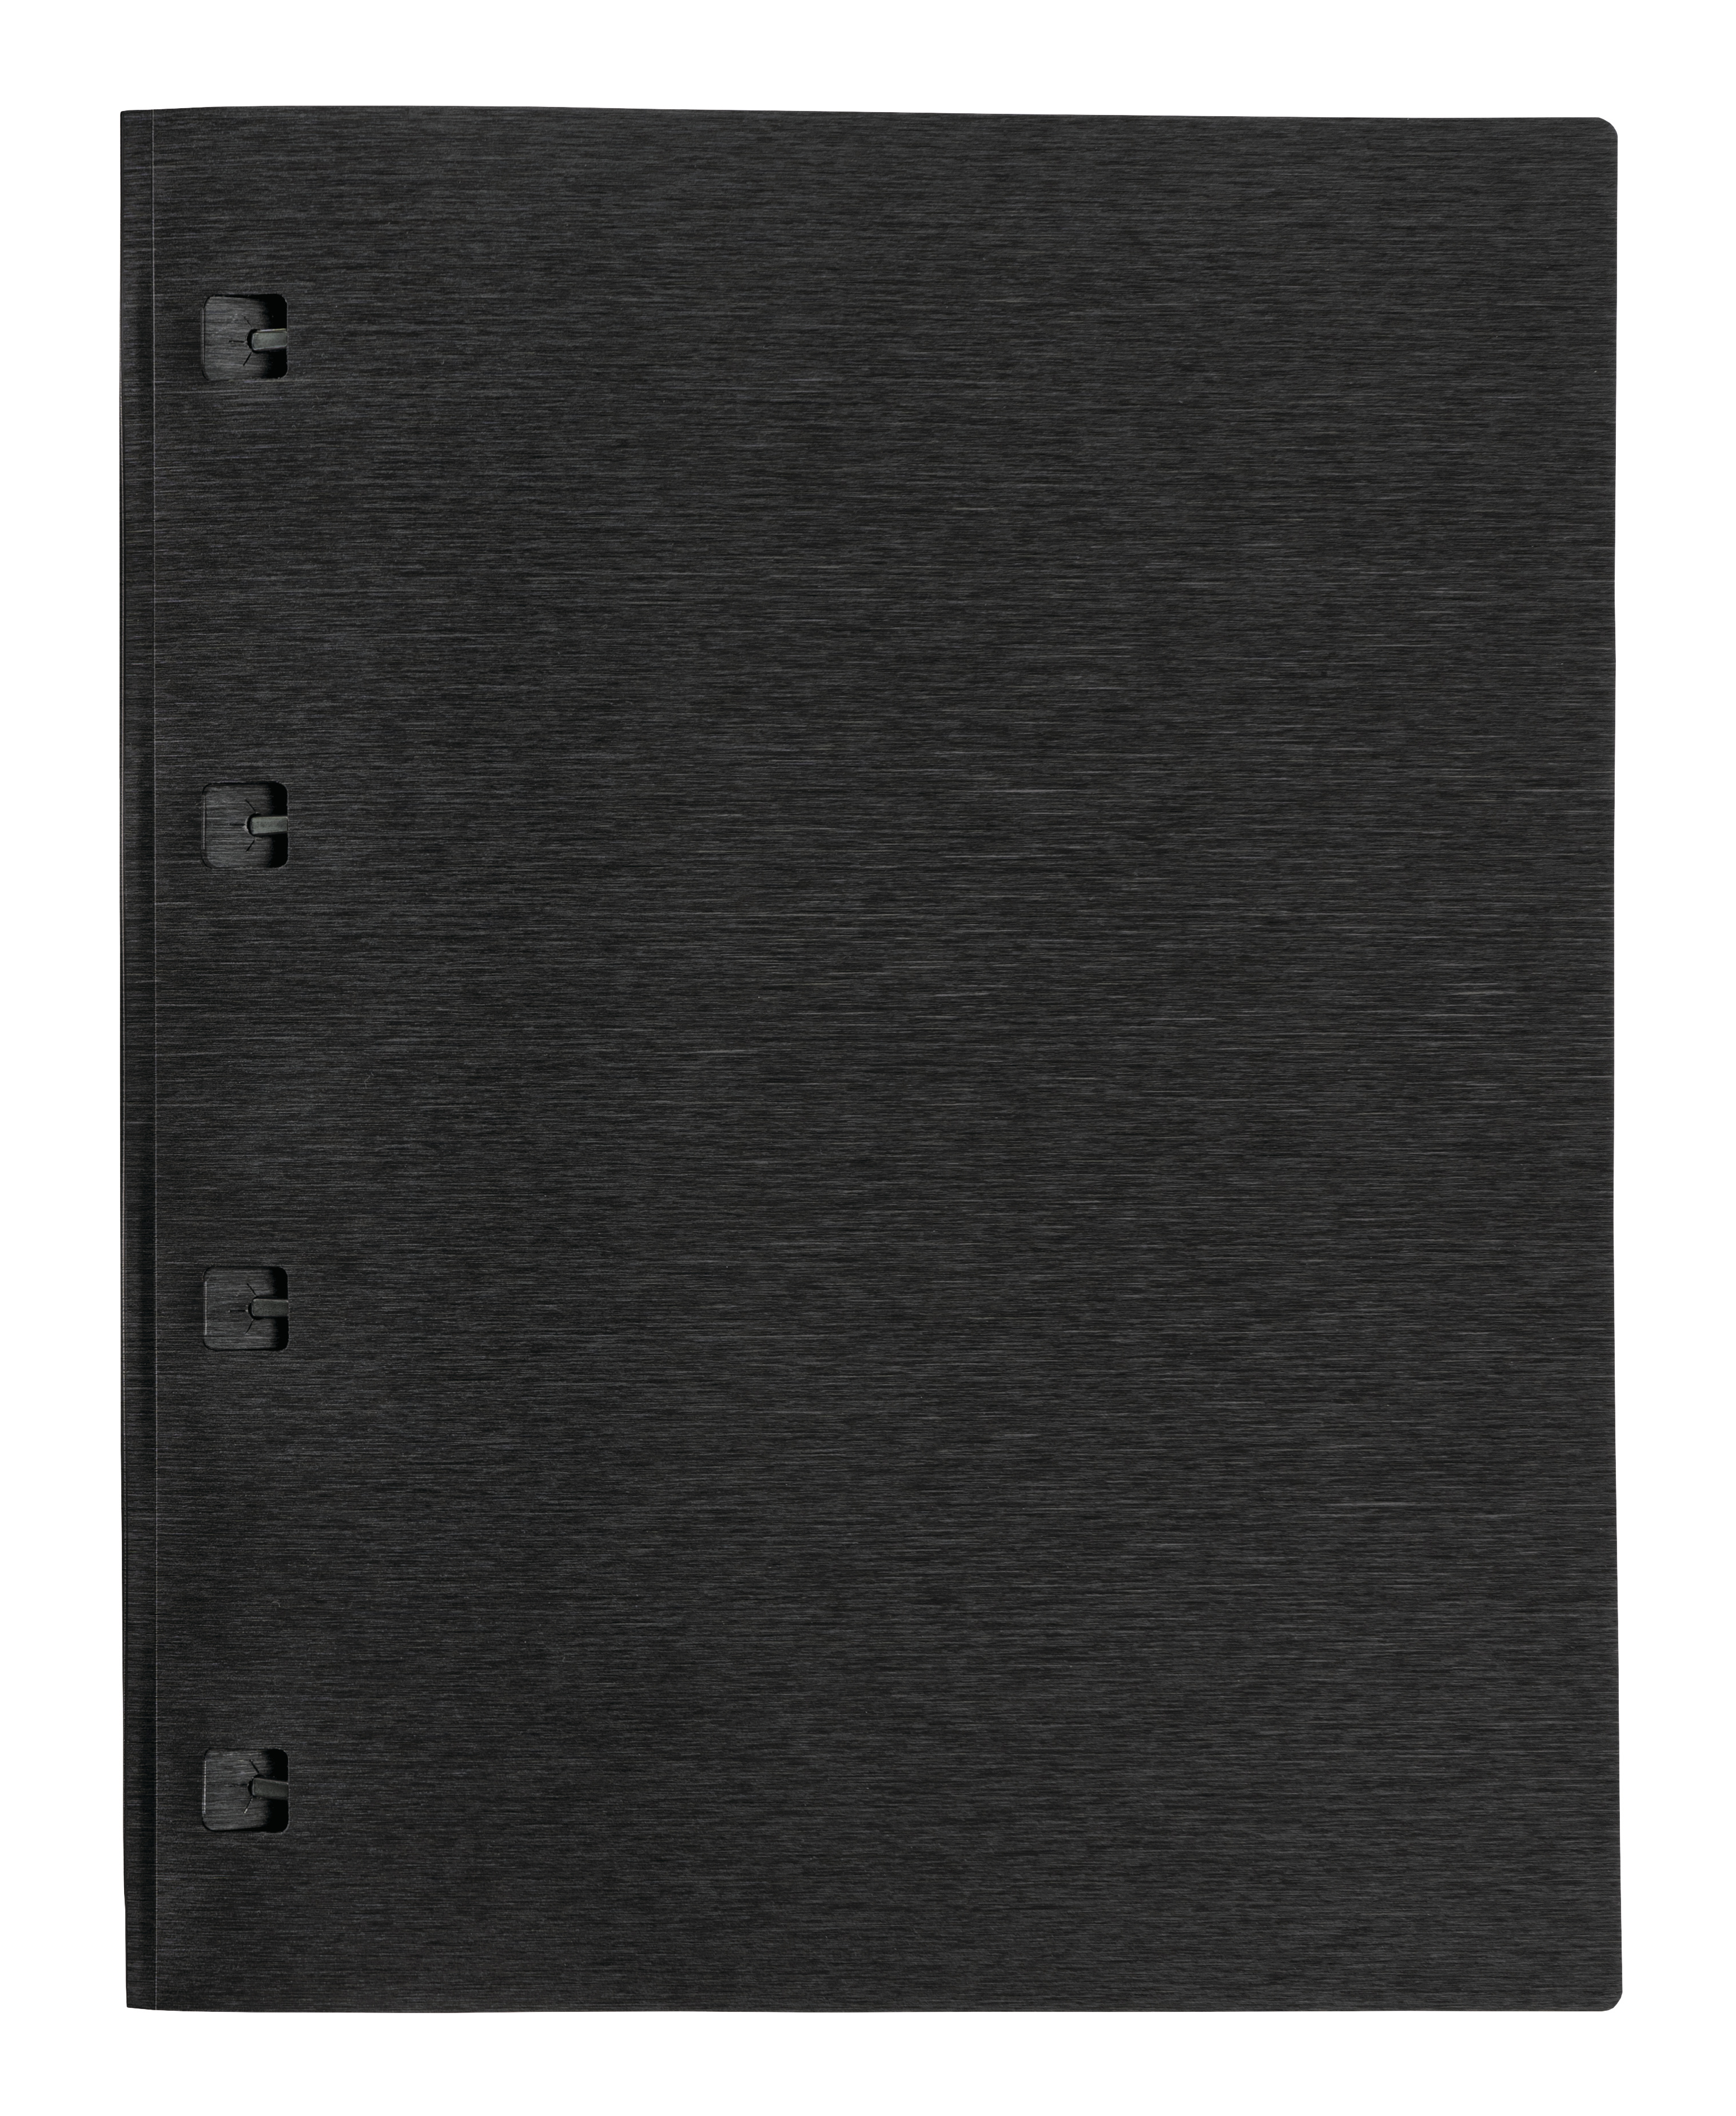 KOLMA Dossier-classeur LineaVerde A4 11.026.06 noir, PP, Sand, recycling